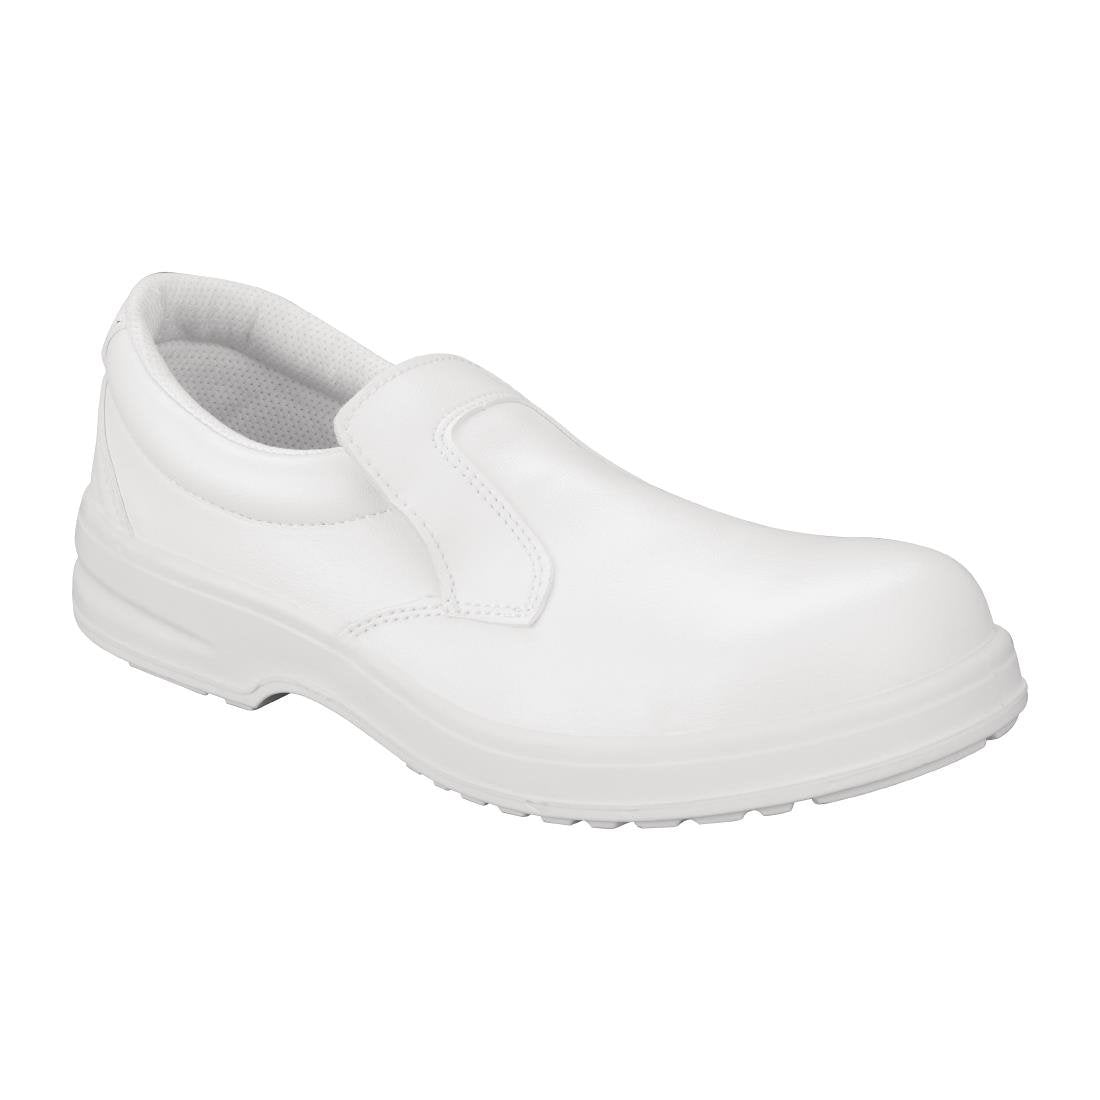 Slipbuster Footwear Slipbuster Lite Safety Slip On White - Size 45